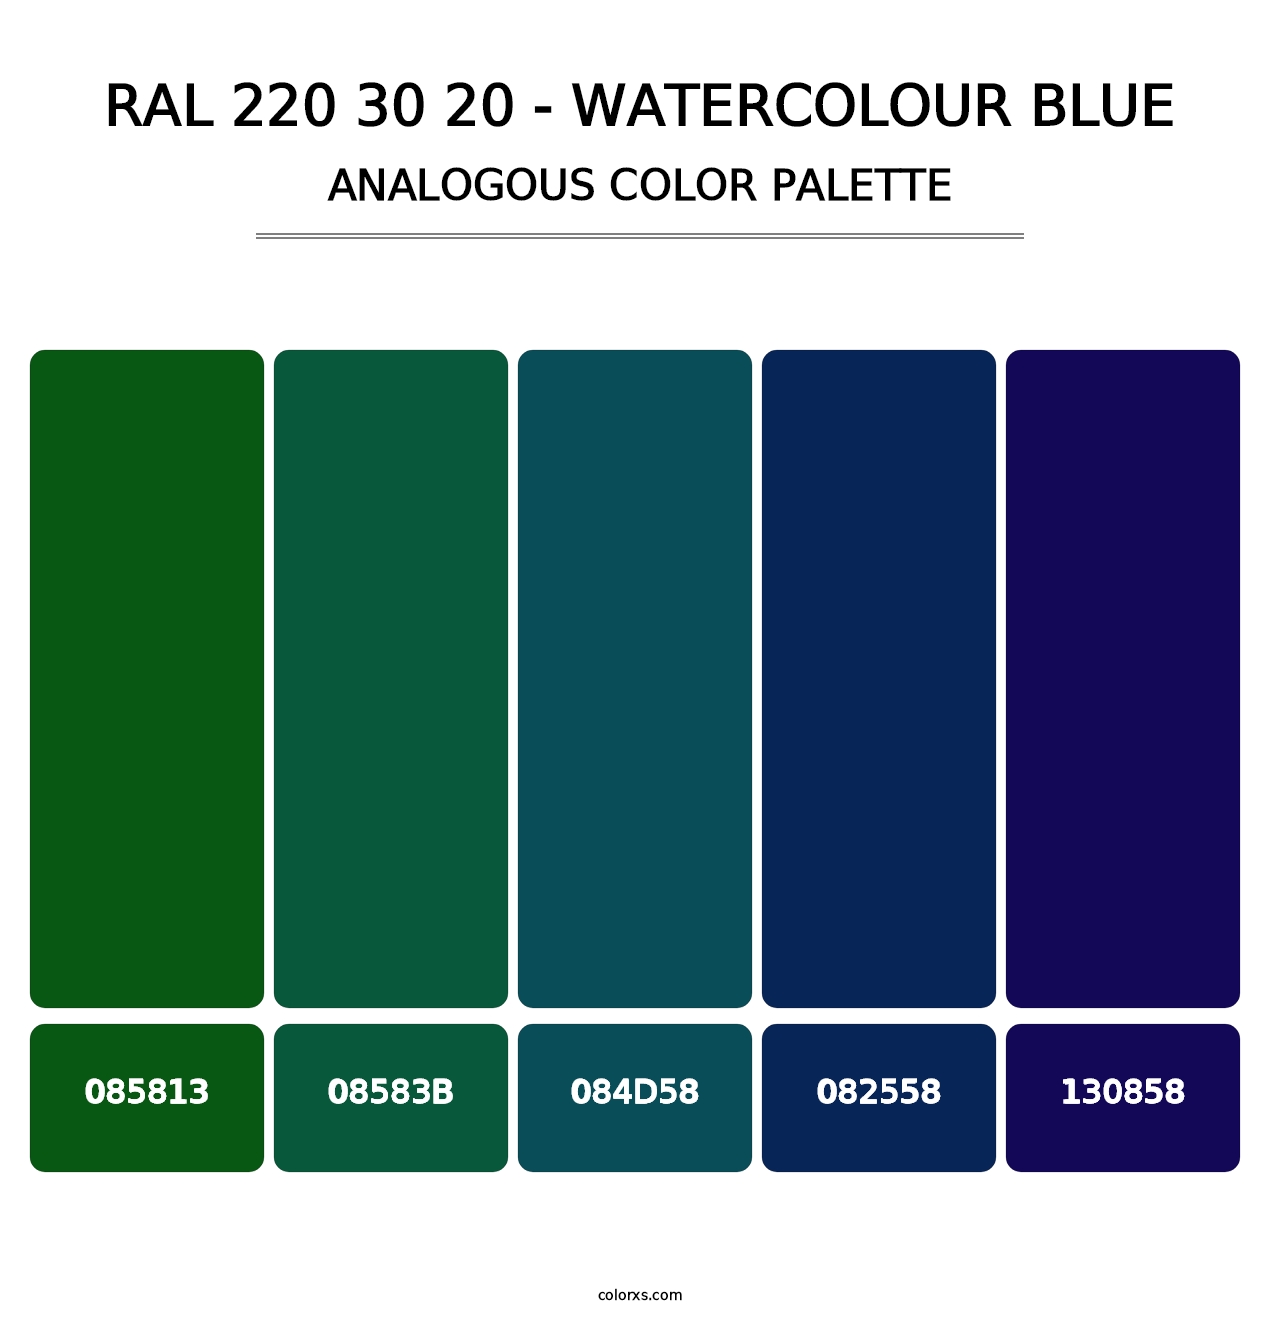 RAL 220 30 20 - Watercolour Blue - Analogous Color Palette